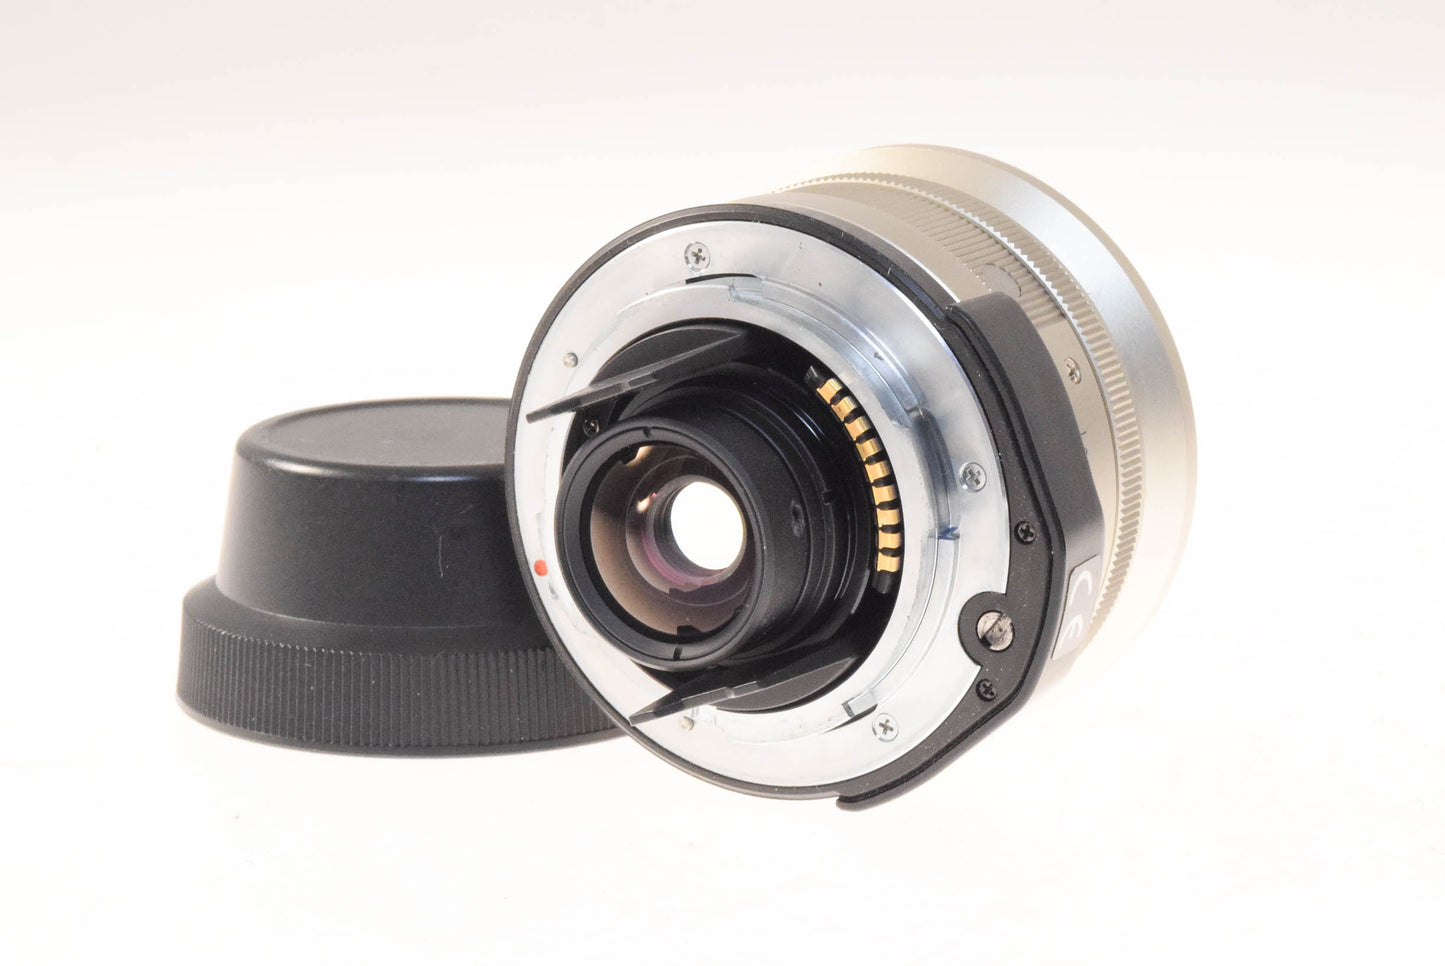 Carl Zeiss 21mm f2.8 Biogon T* + GF-21mm Optical Viewfinder